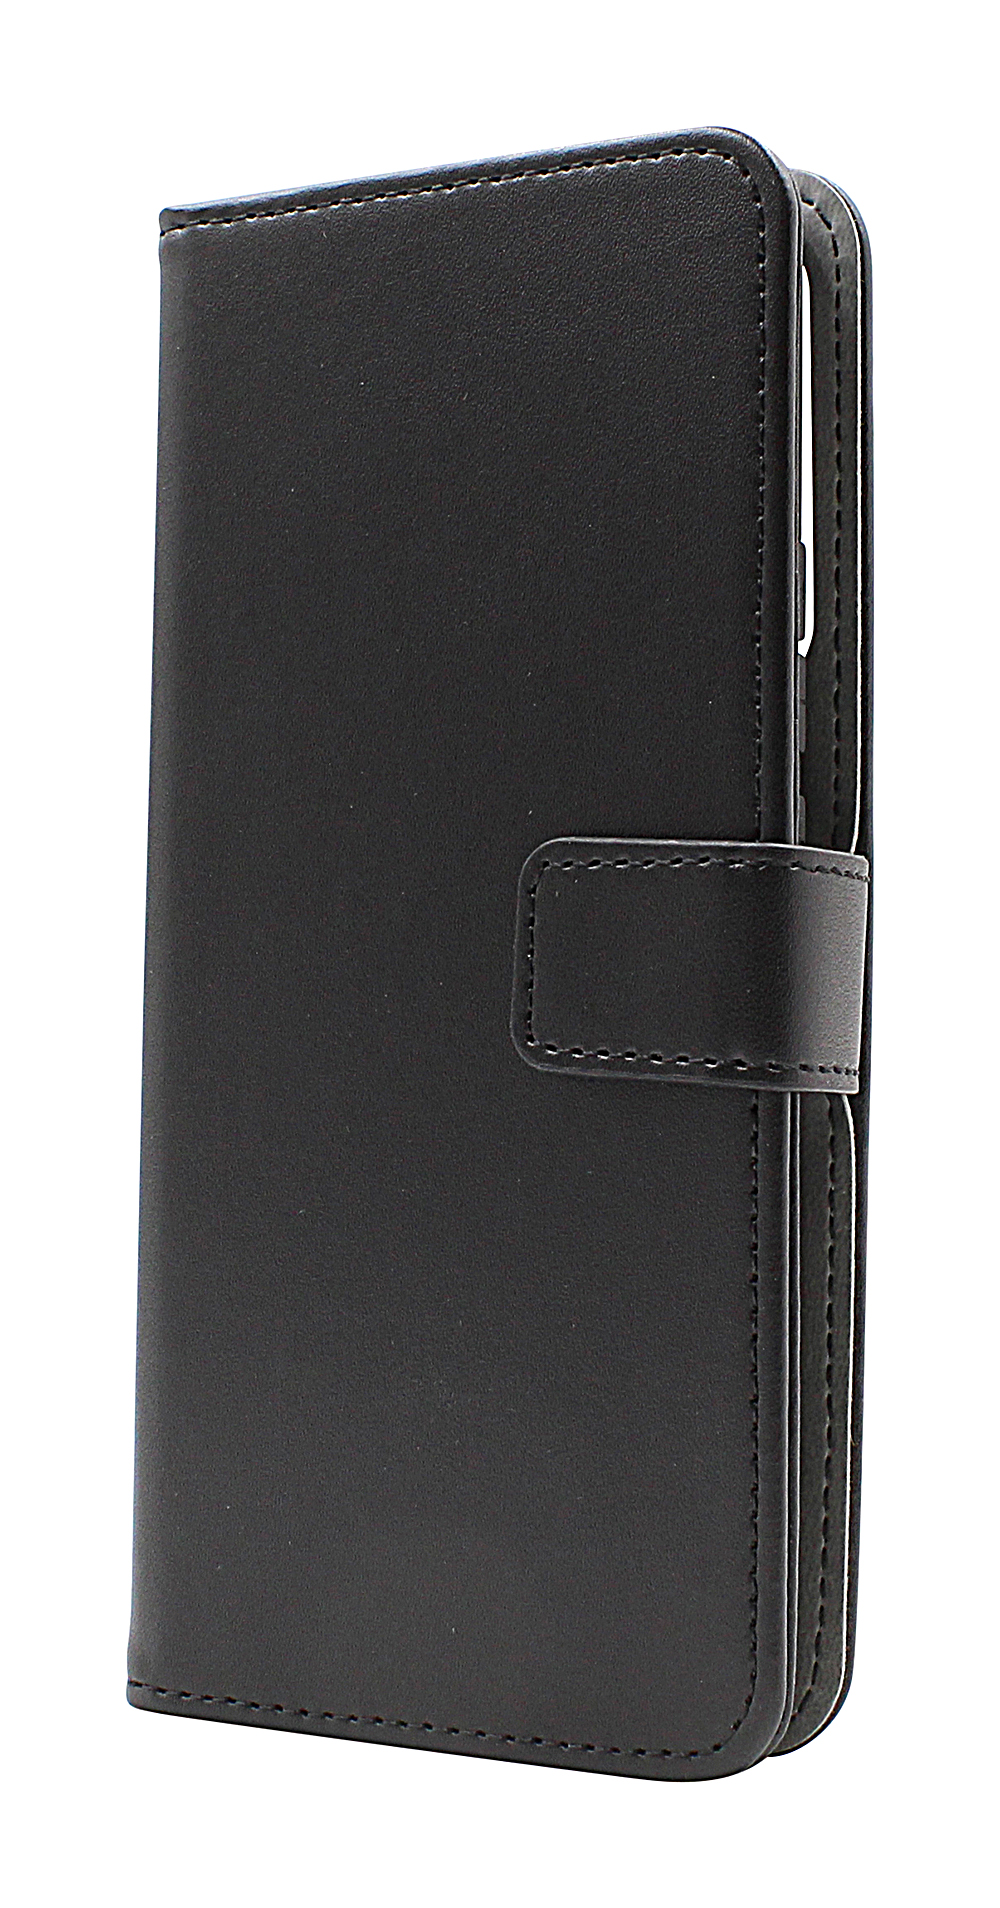 Skimblocker Magnet Wallet Xiaomi 13 Lite 5G